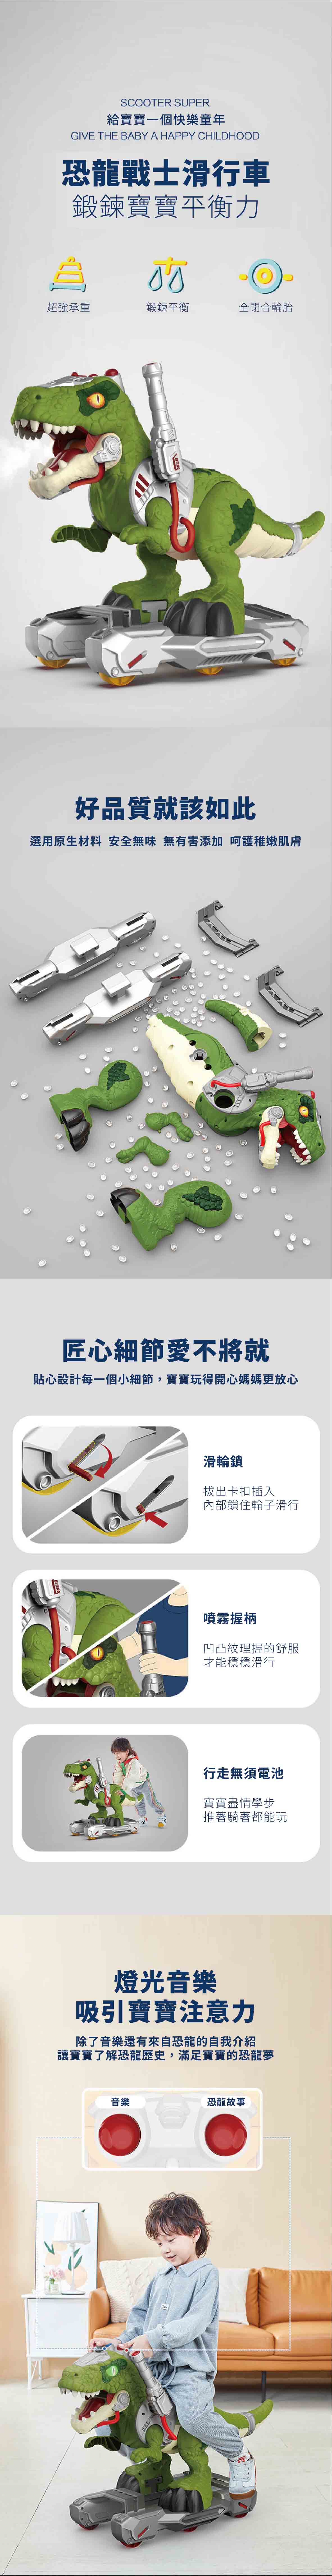 proimages/product/00027974_聲光噴射恐龍戰士滑行車(綠)(CN-2865339)-04.jpg